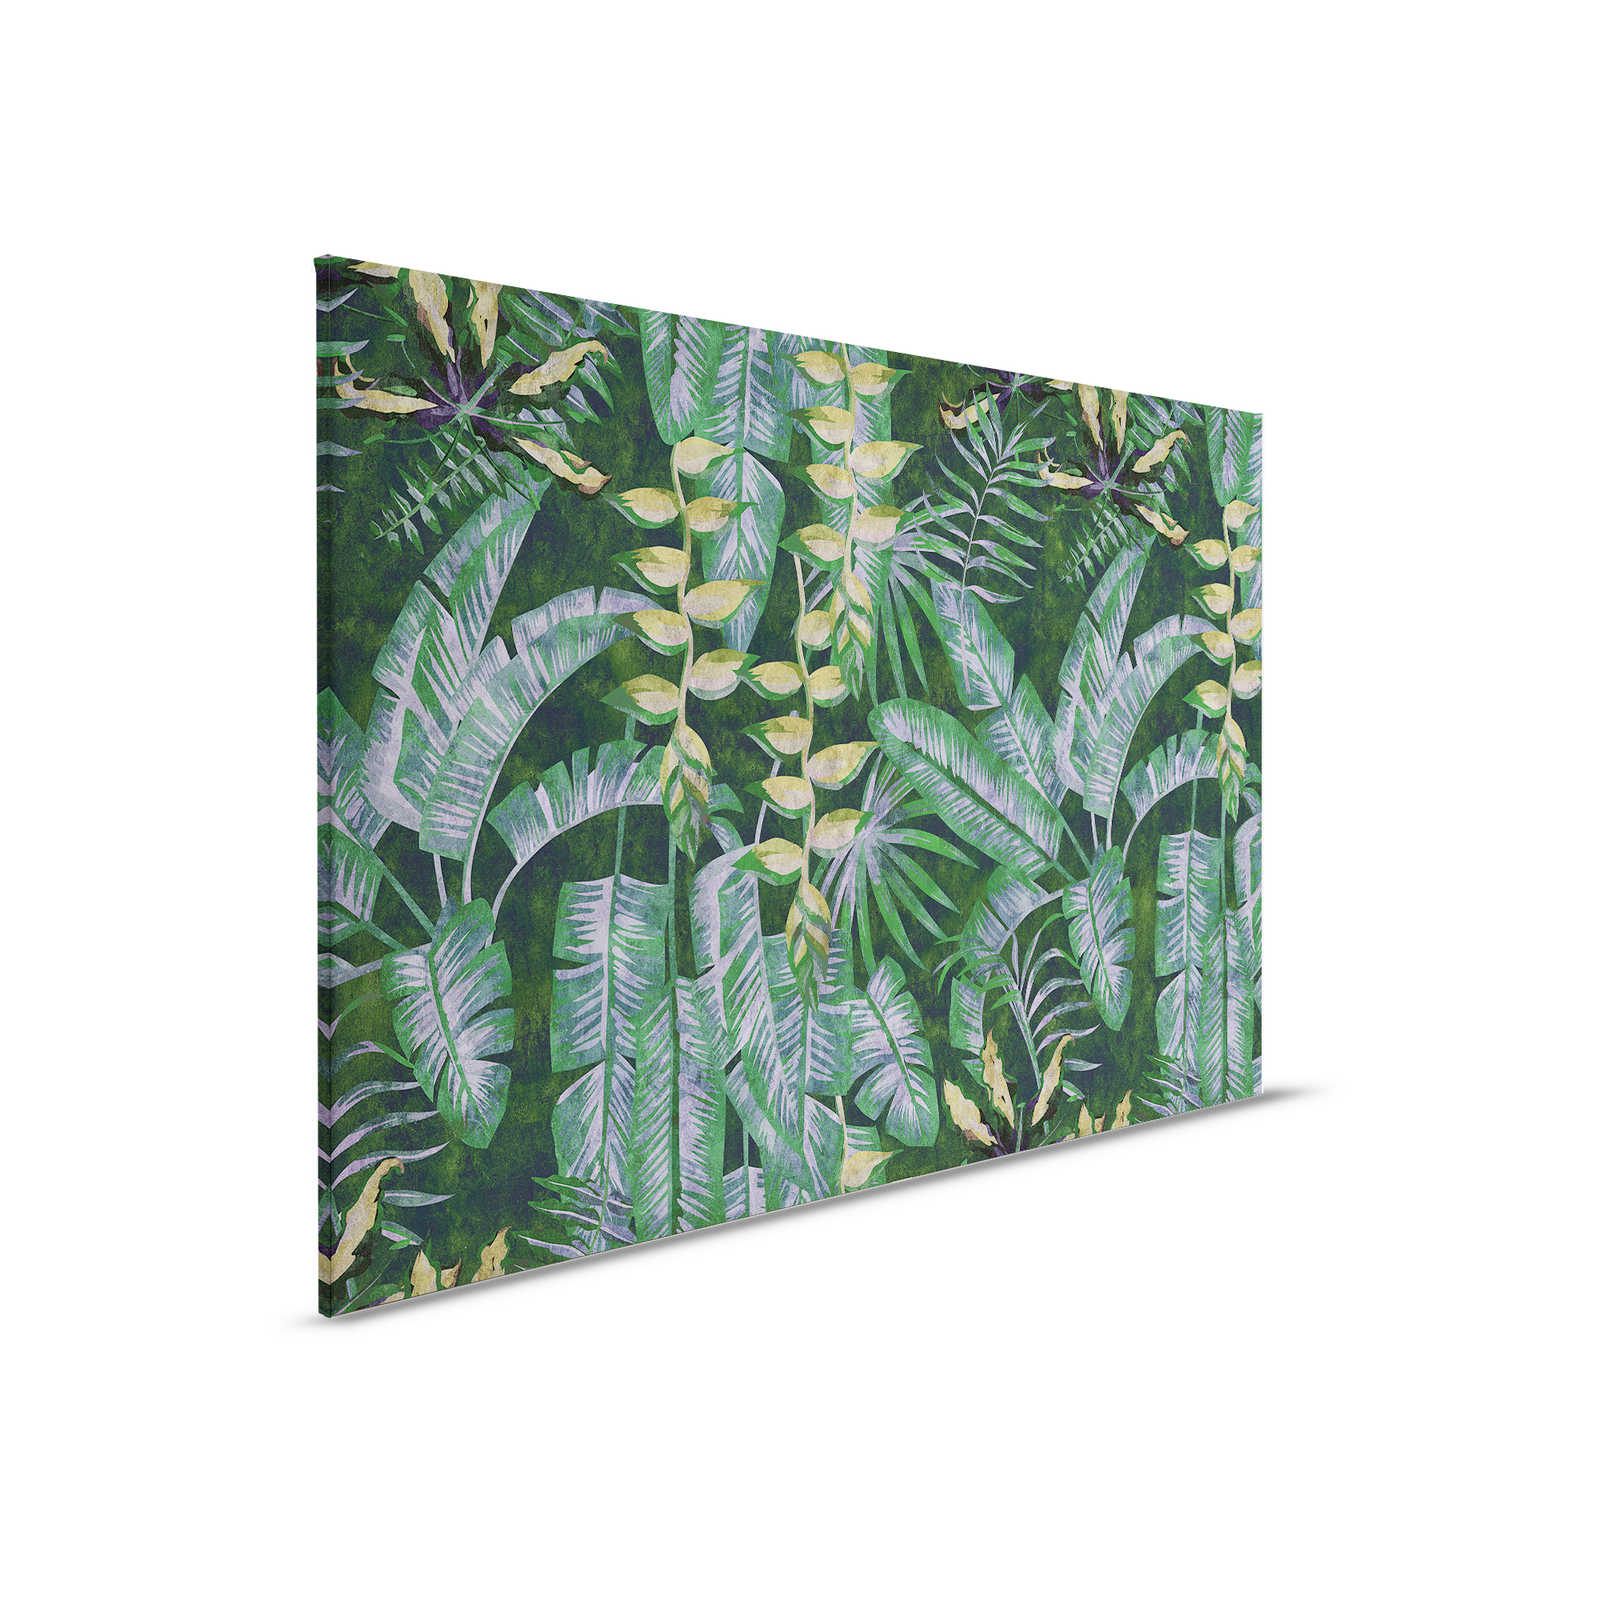 Tropicana 2 - Cuadro en lienzo con plantas tropicales - 0,90 m x 0,60 m
